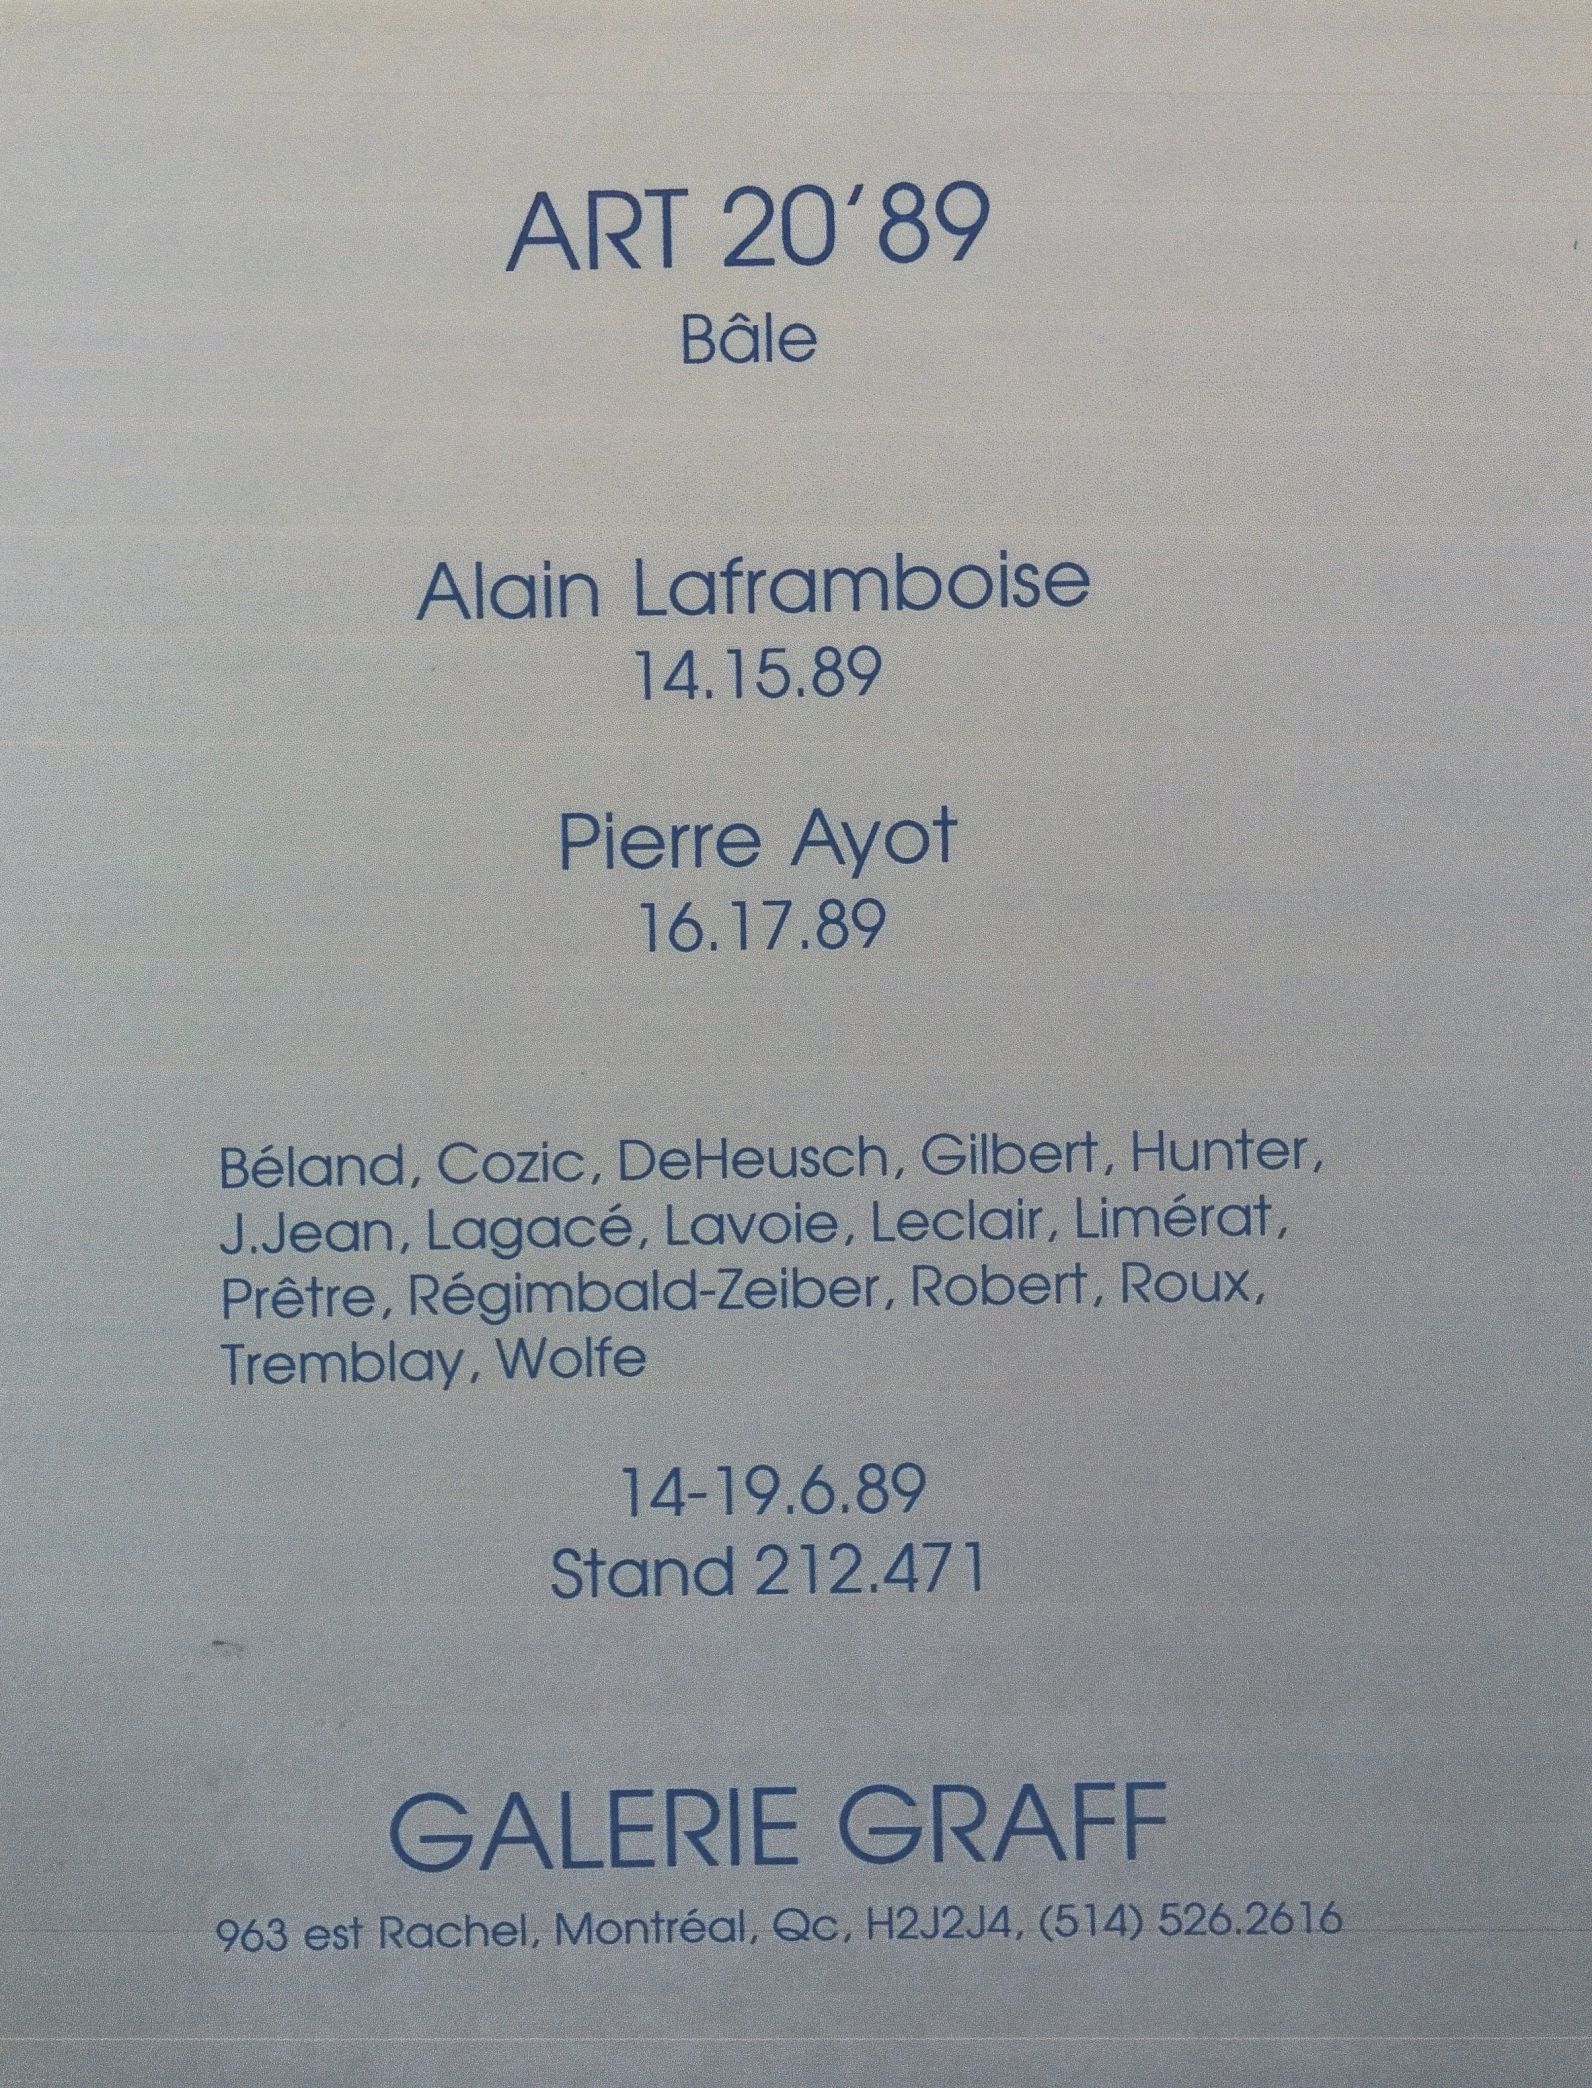 Carton d’invitation de l’exposition Art 20'89, Foire internationale de Bâle, Espace 212.471-Galerie Graff, Bâle, Suisse, 1989.